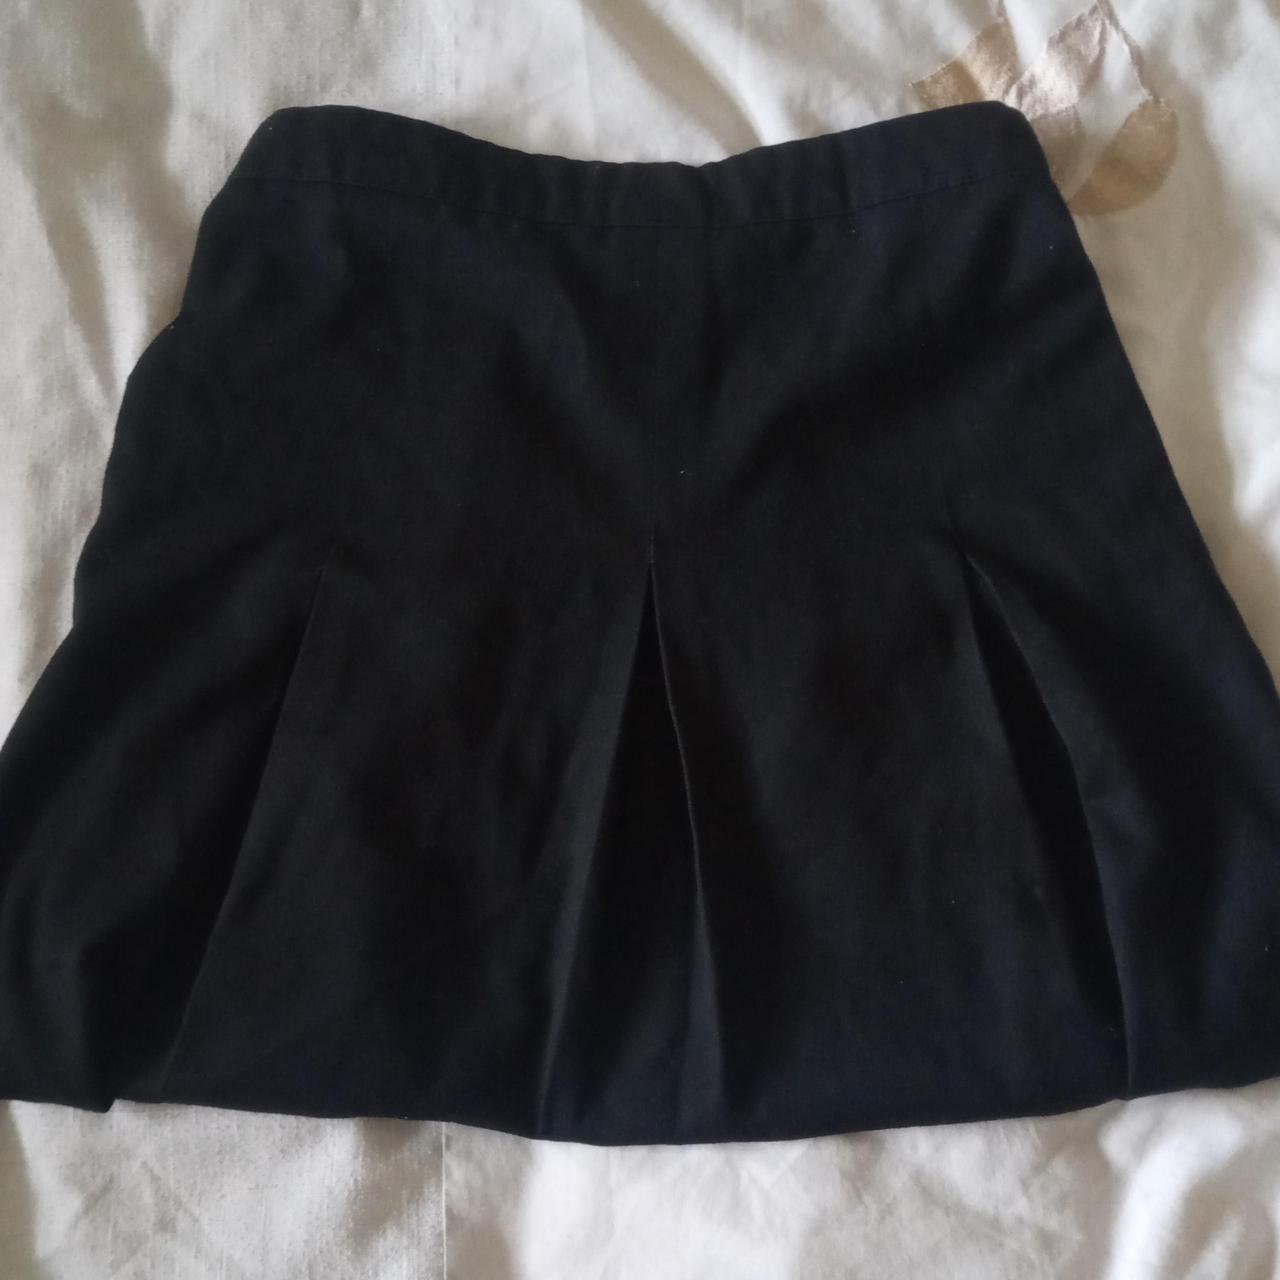 black pleated mini skirt ⬇️⬇️ adjustable waistband... - Depop